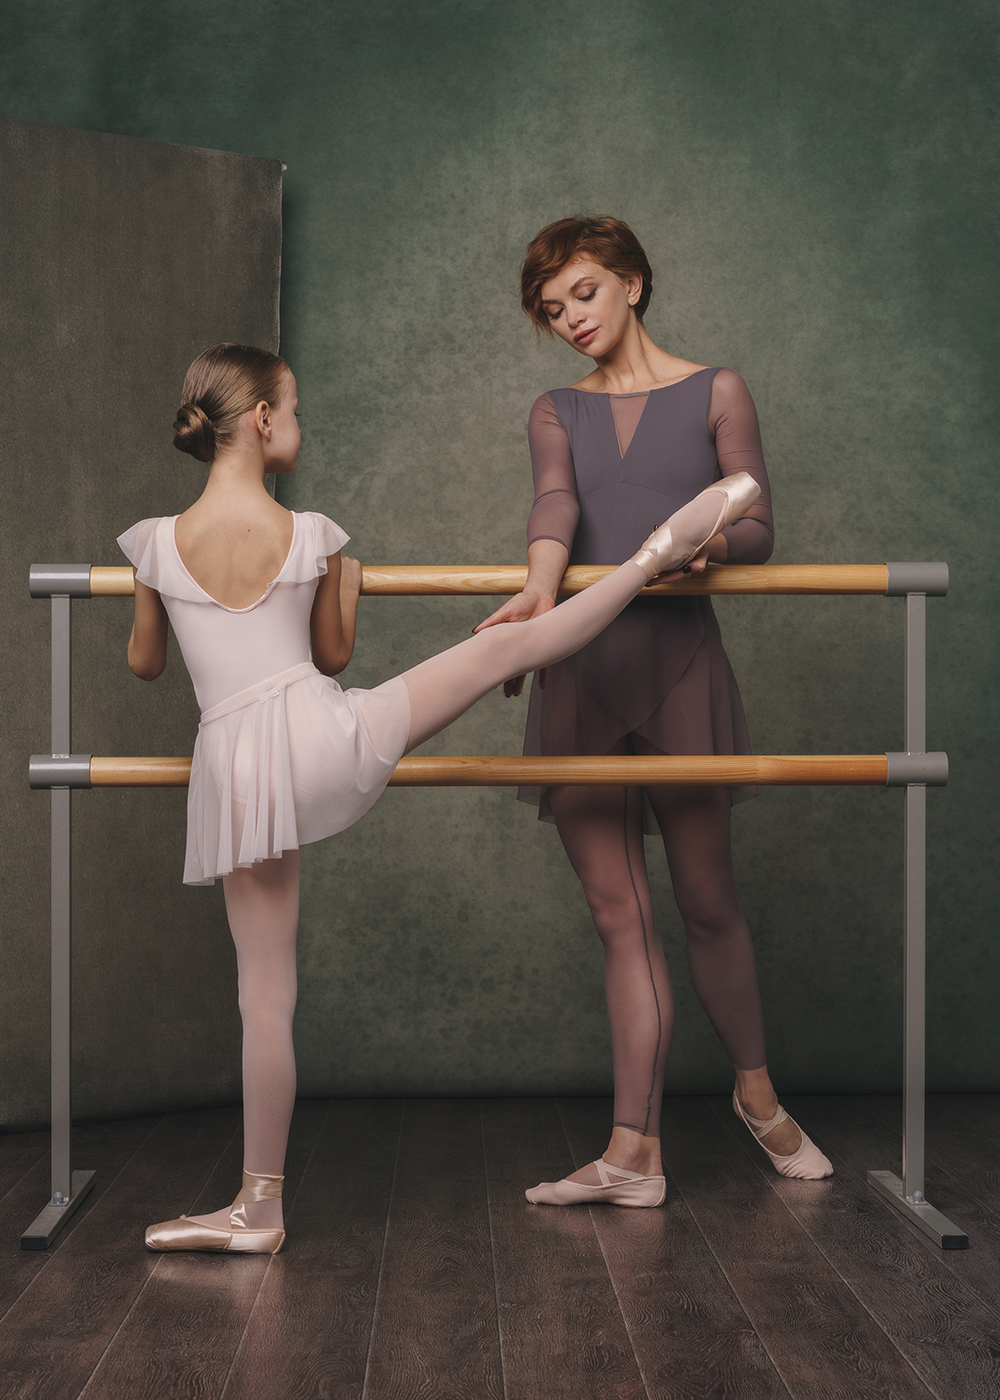 Dance underwear  : The ballet experts